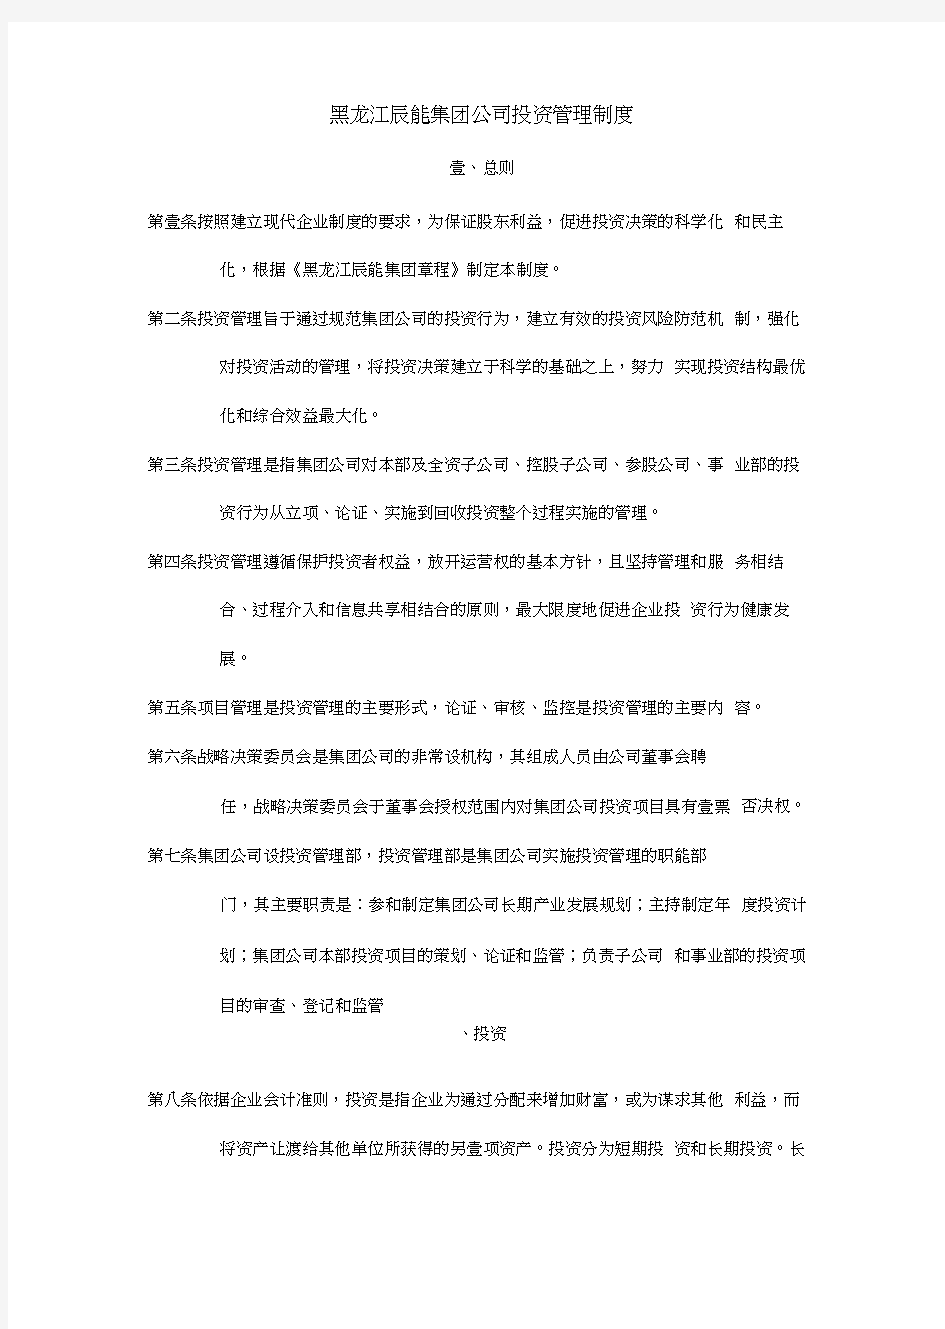 黑龙江辰能集团公司投资管理制度